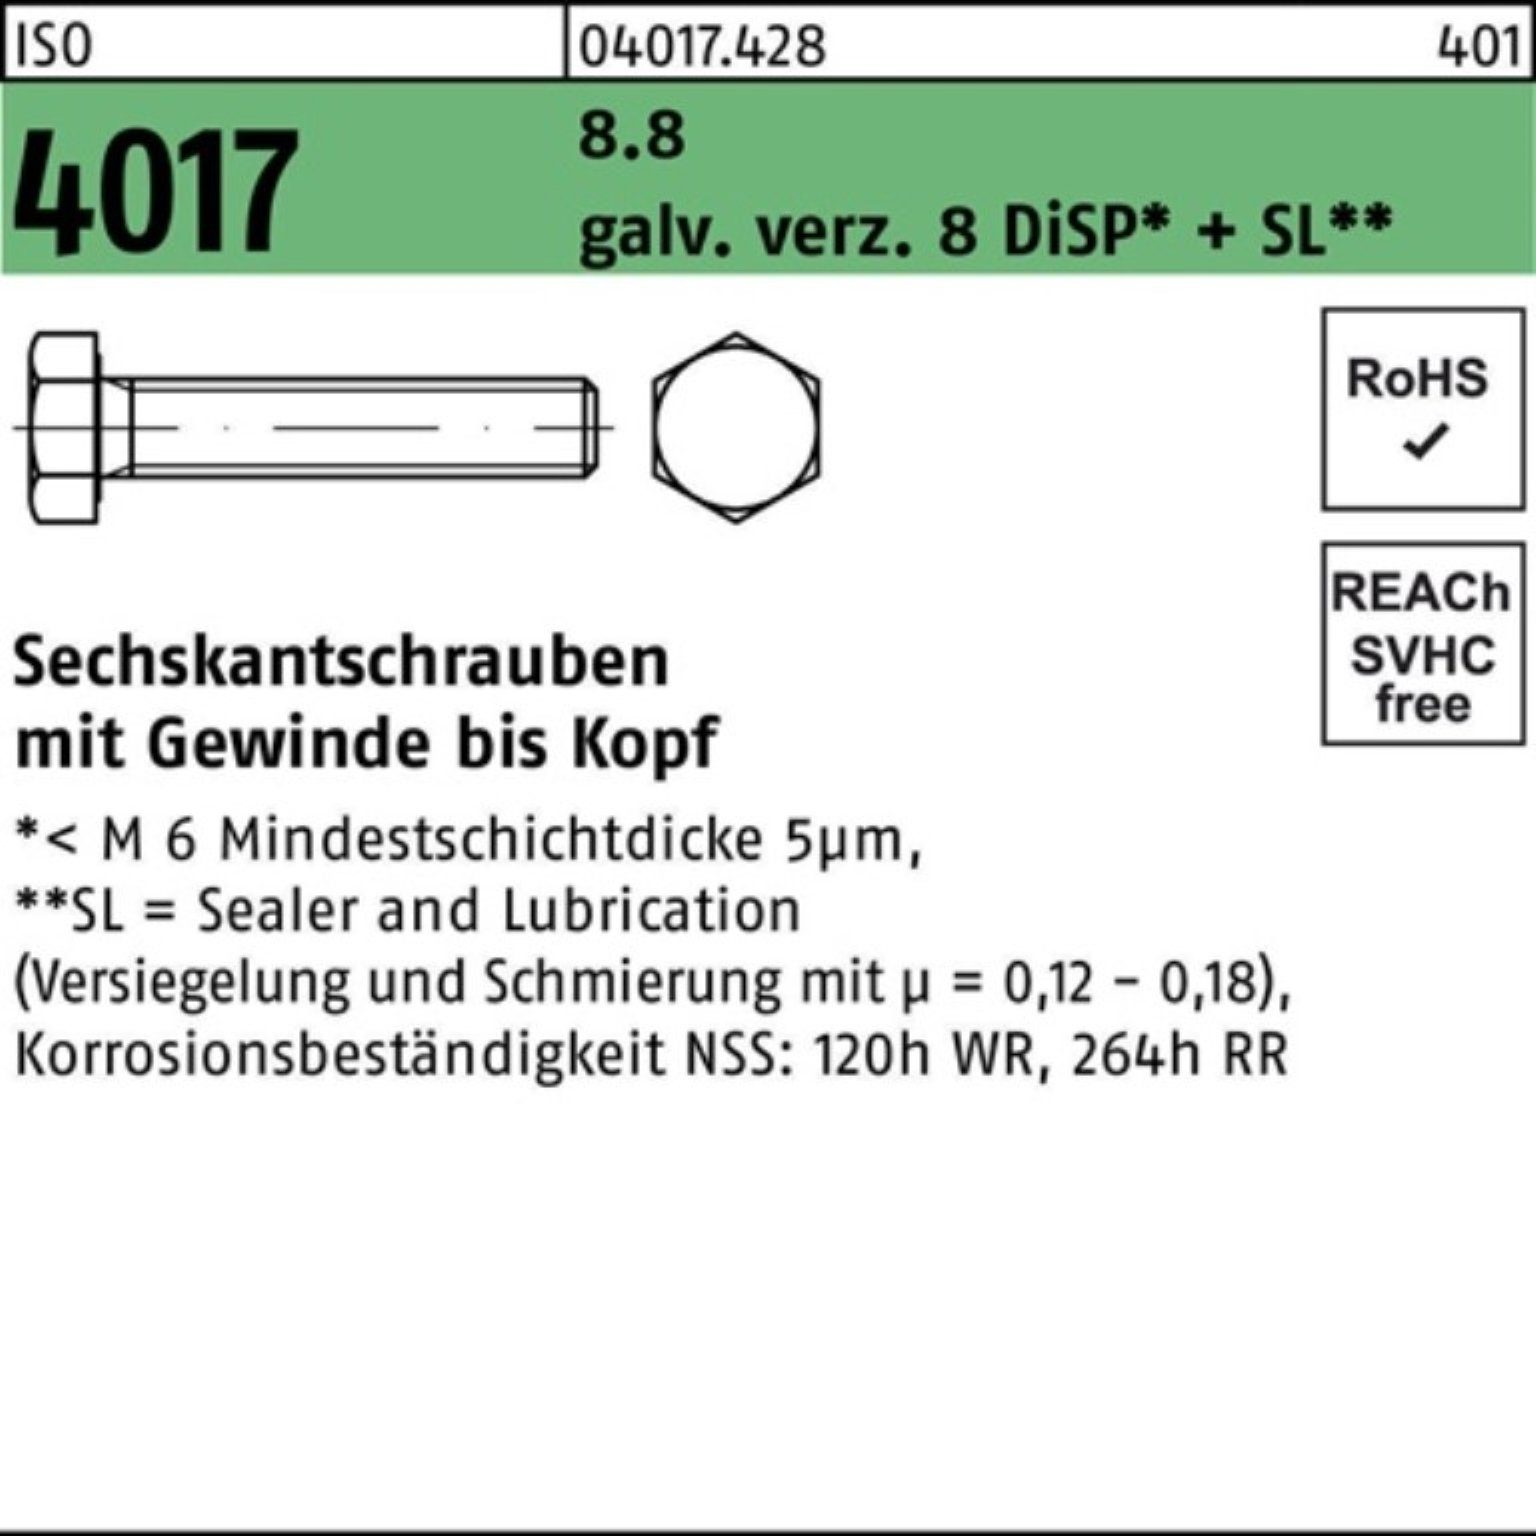 Bufab Sechskantschraube 200er Pack Sechskantschraube ISO 4017 VG M8x 10 8.8 galv.verz. 8 DiSP+